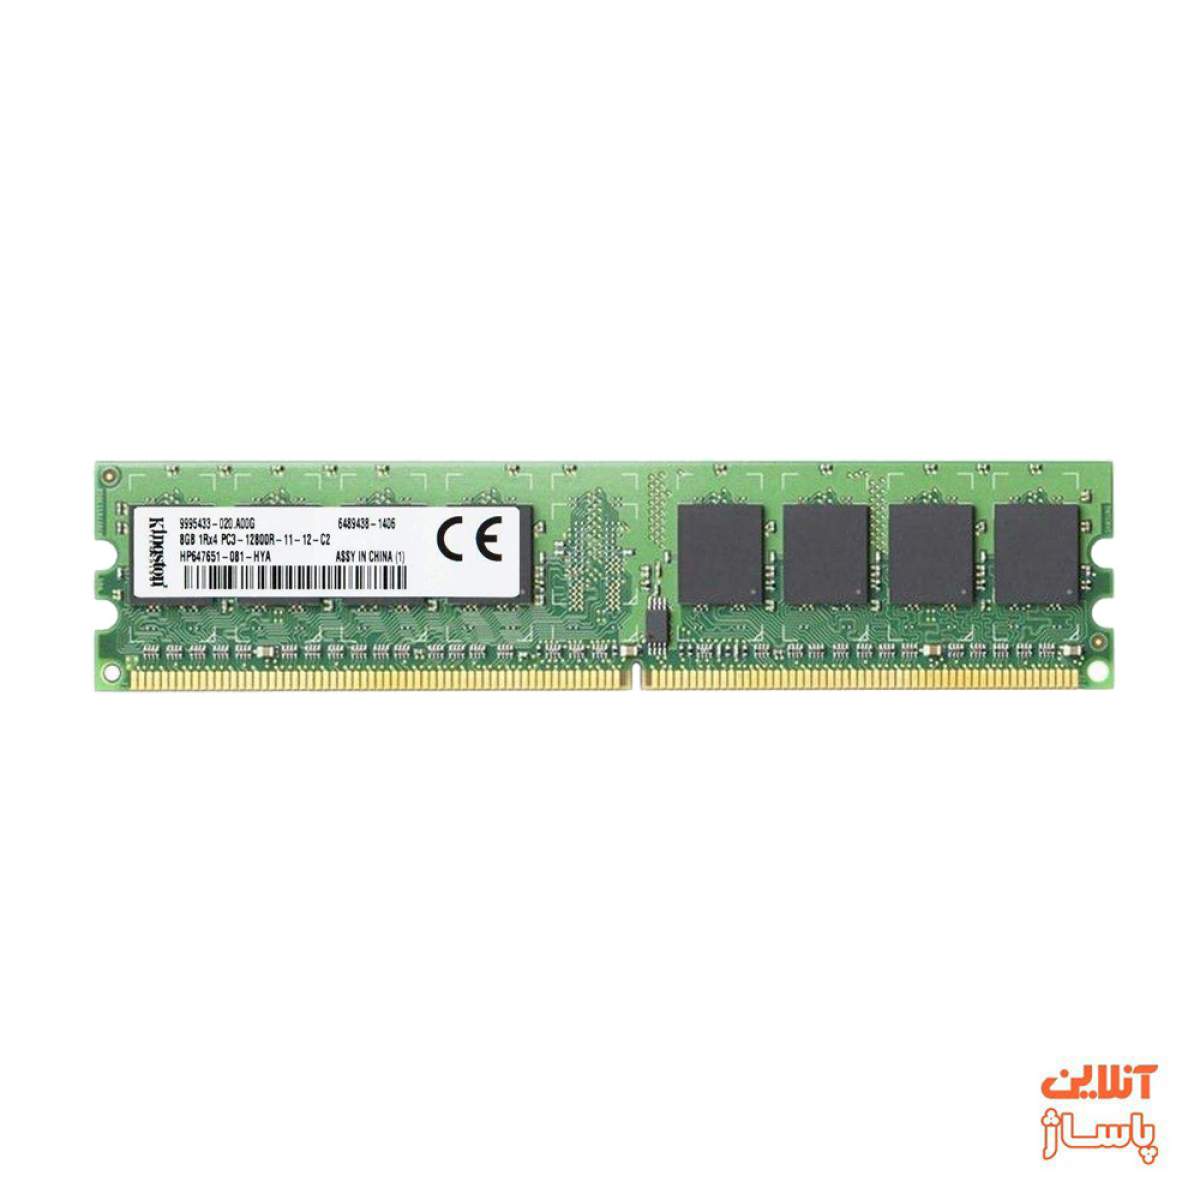  رم دسکتاپ DDR3 تک کاناله 1600 مگاهرتز CL11 گینکستون ظرفیت 8 گیگابایت